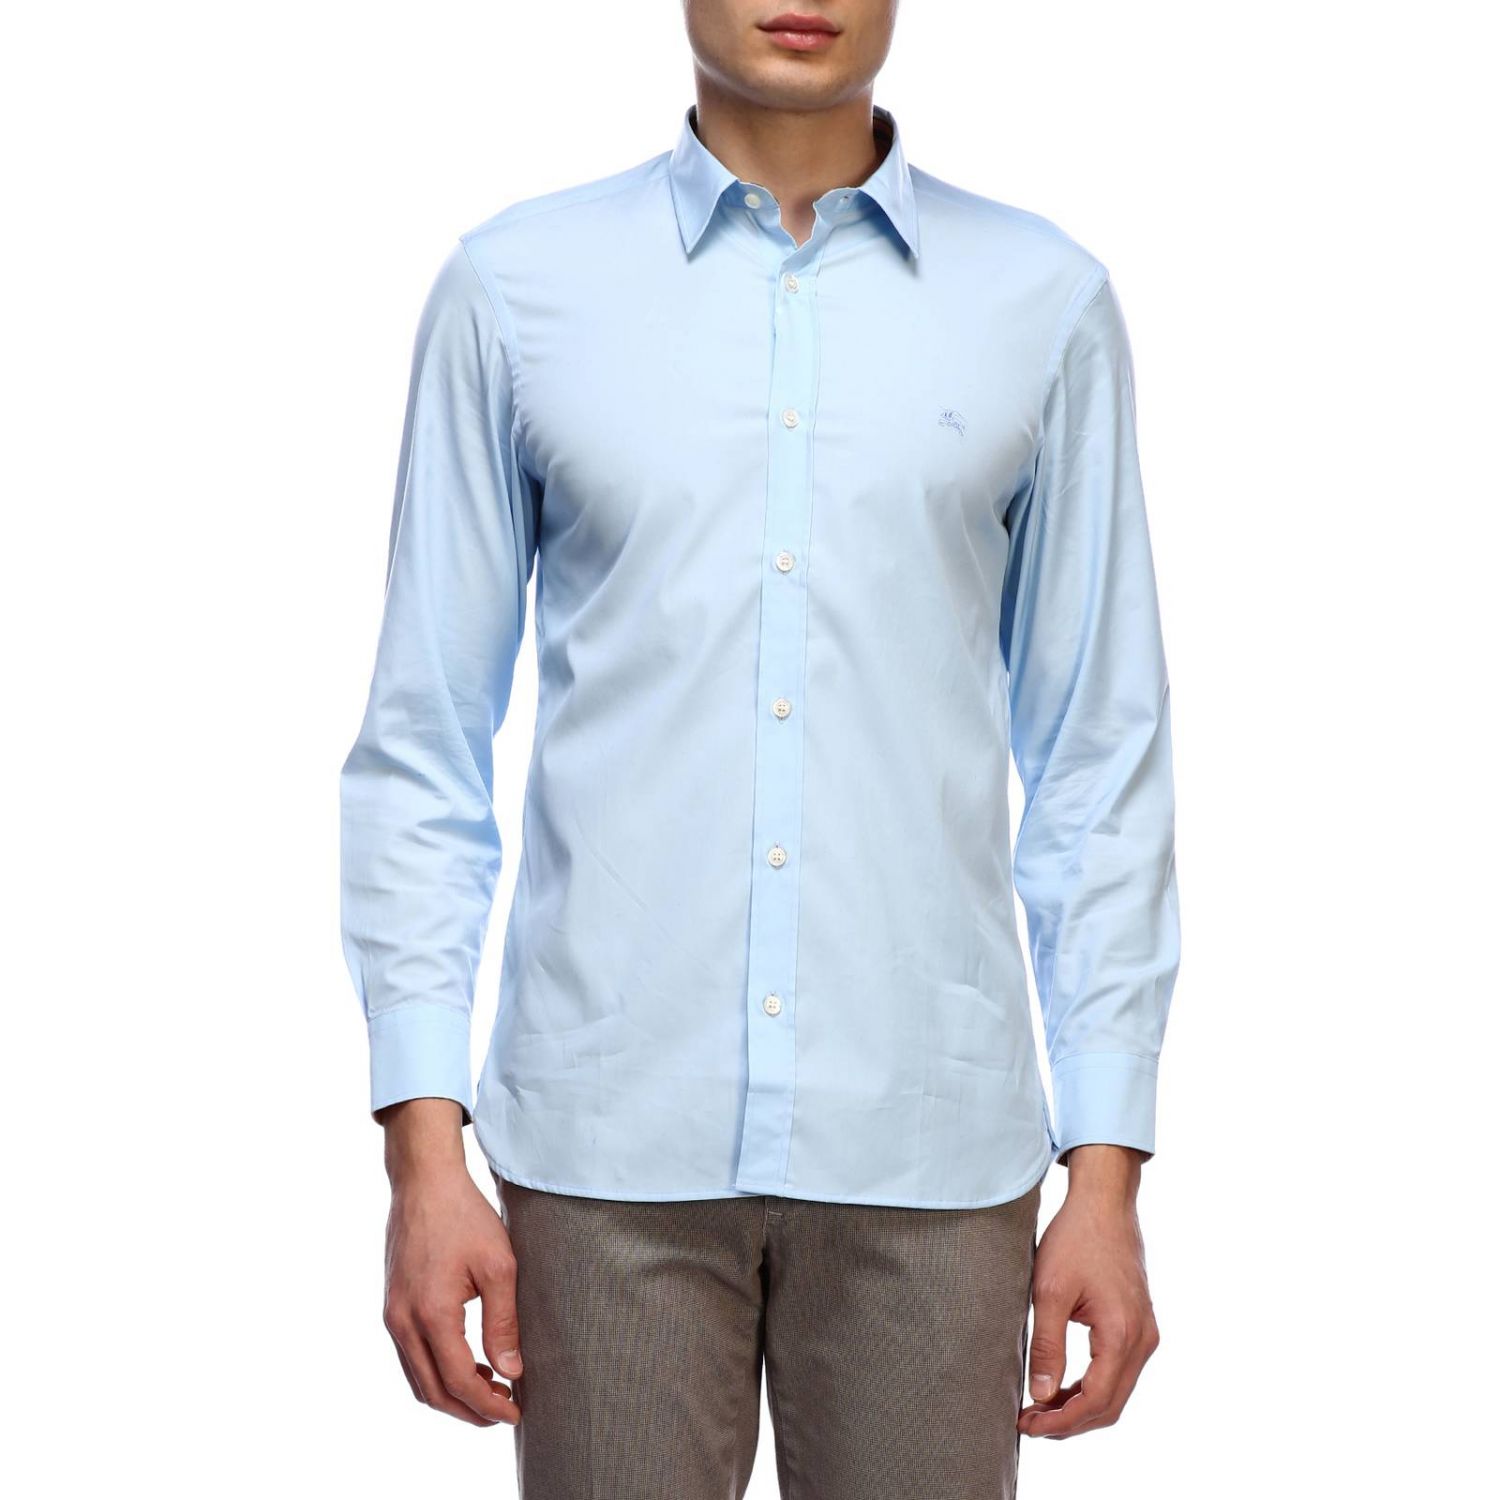 Burberry Outlet: Shirt men | Shirt Burberry Men Blue | Shirt Burberry ...